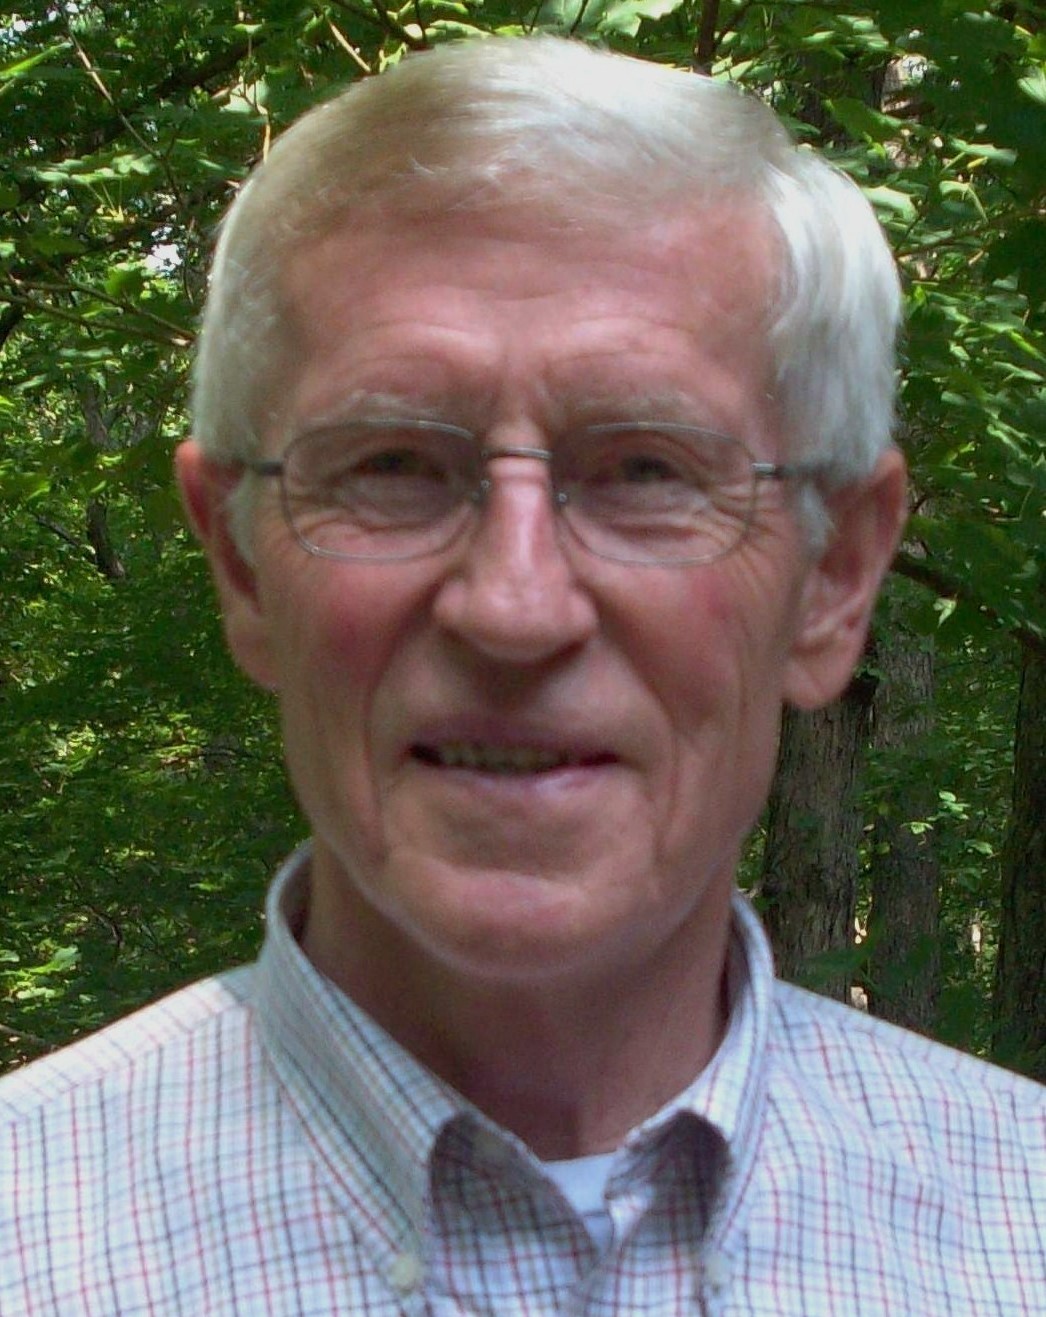 Portrait of John Ikerd